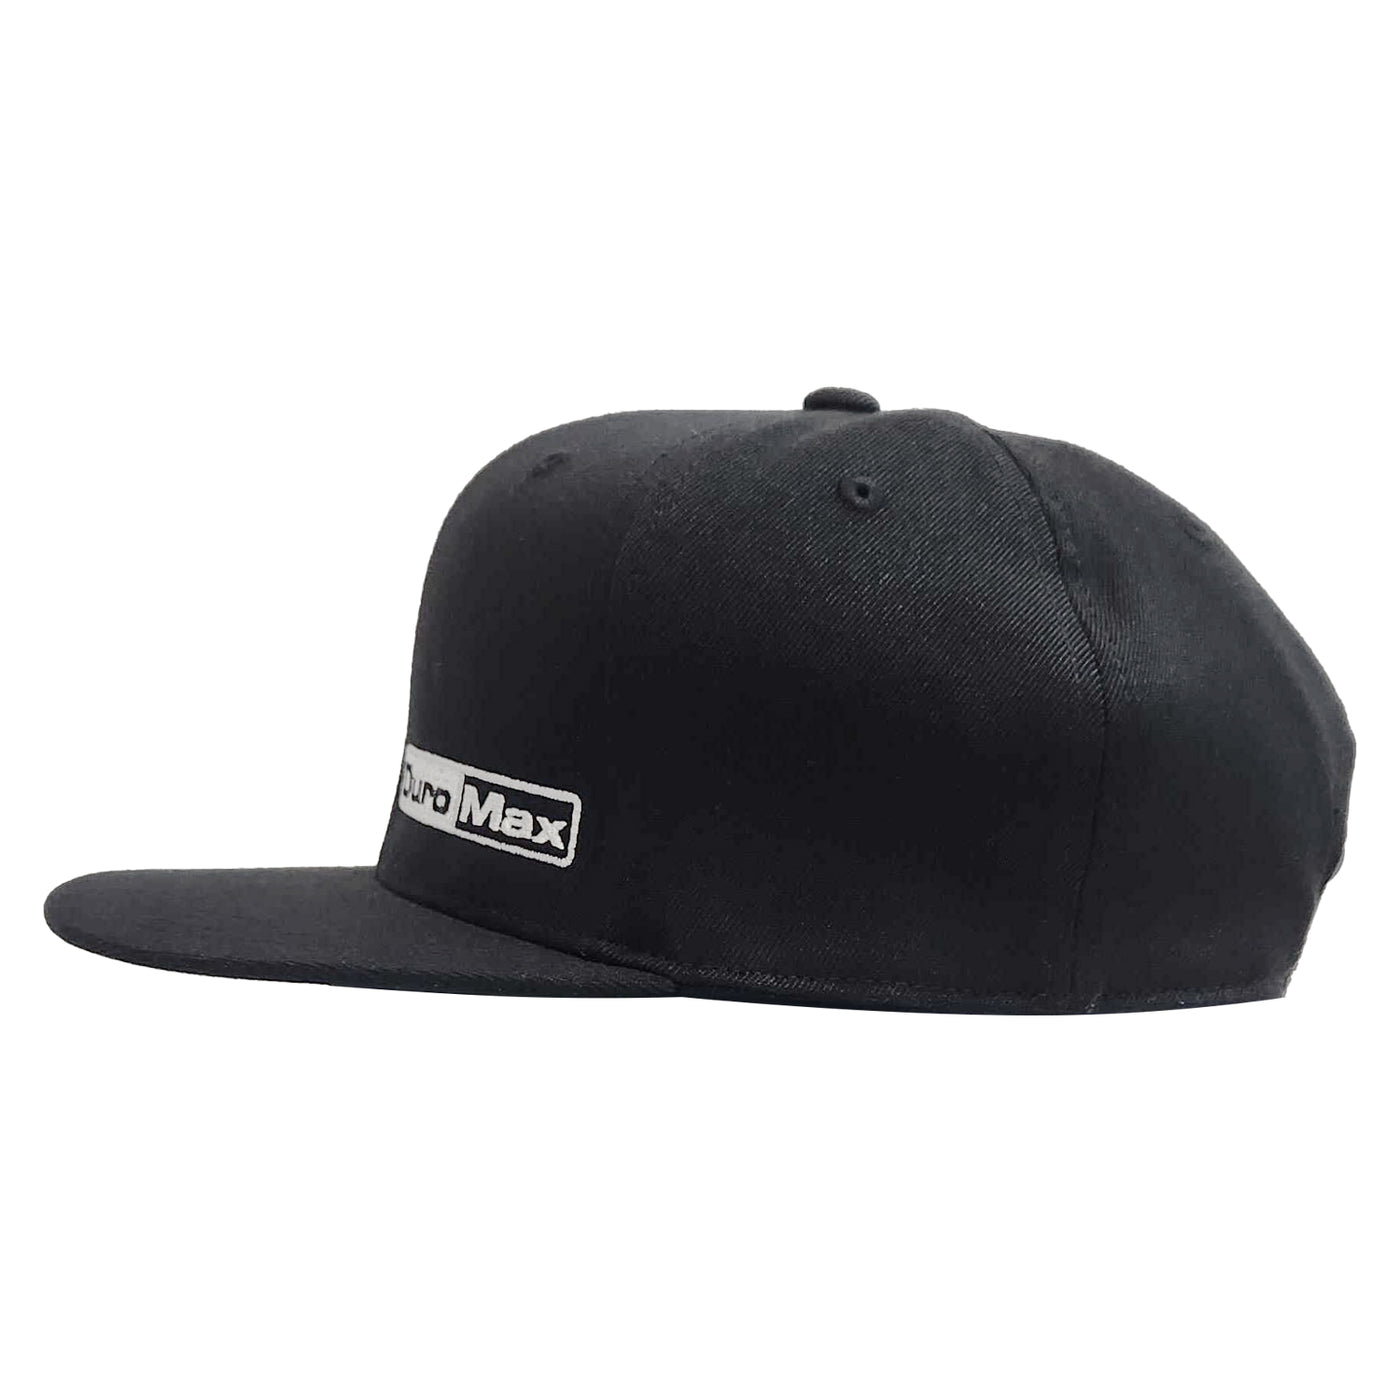 DuroMax  DuroMax Flexfit 110 Premium Snapback Hat